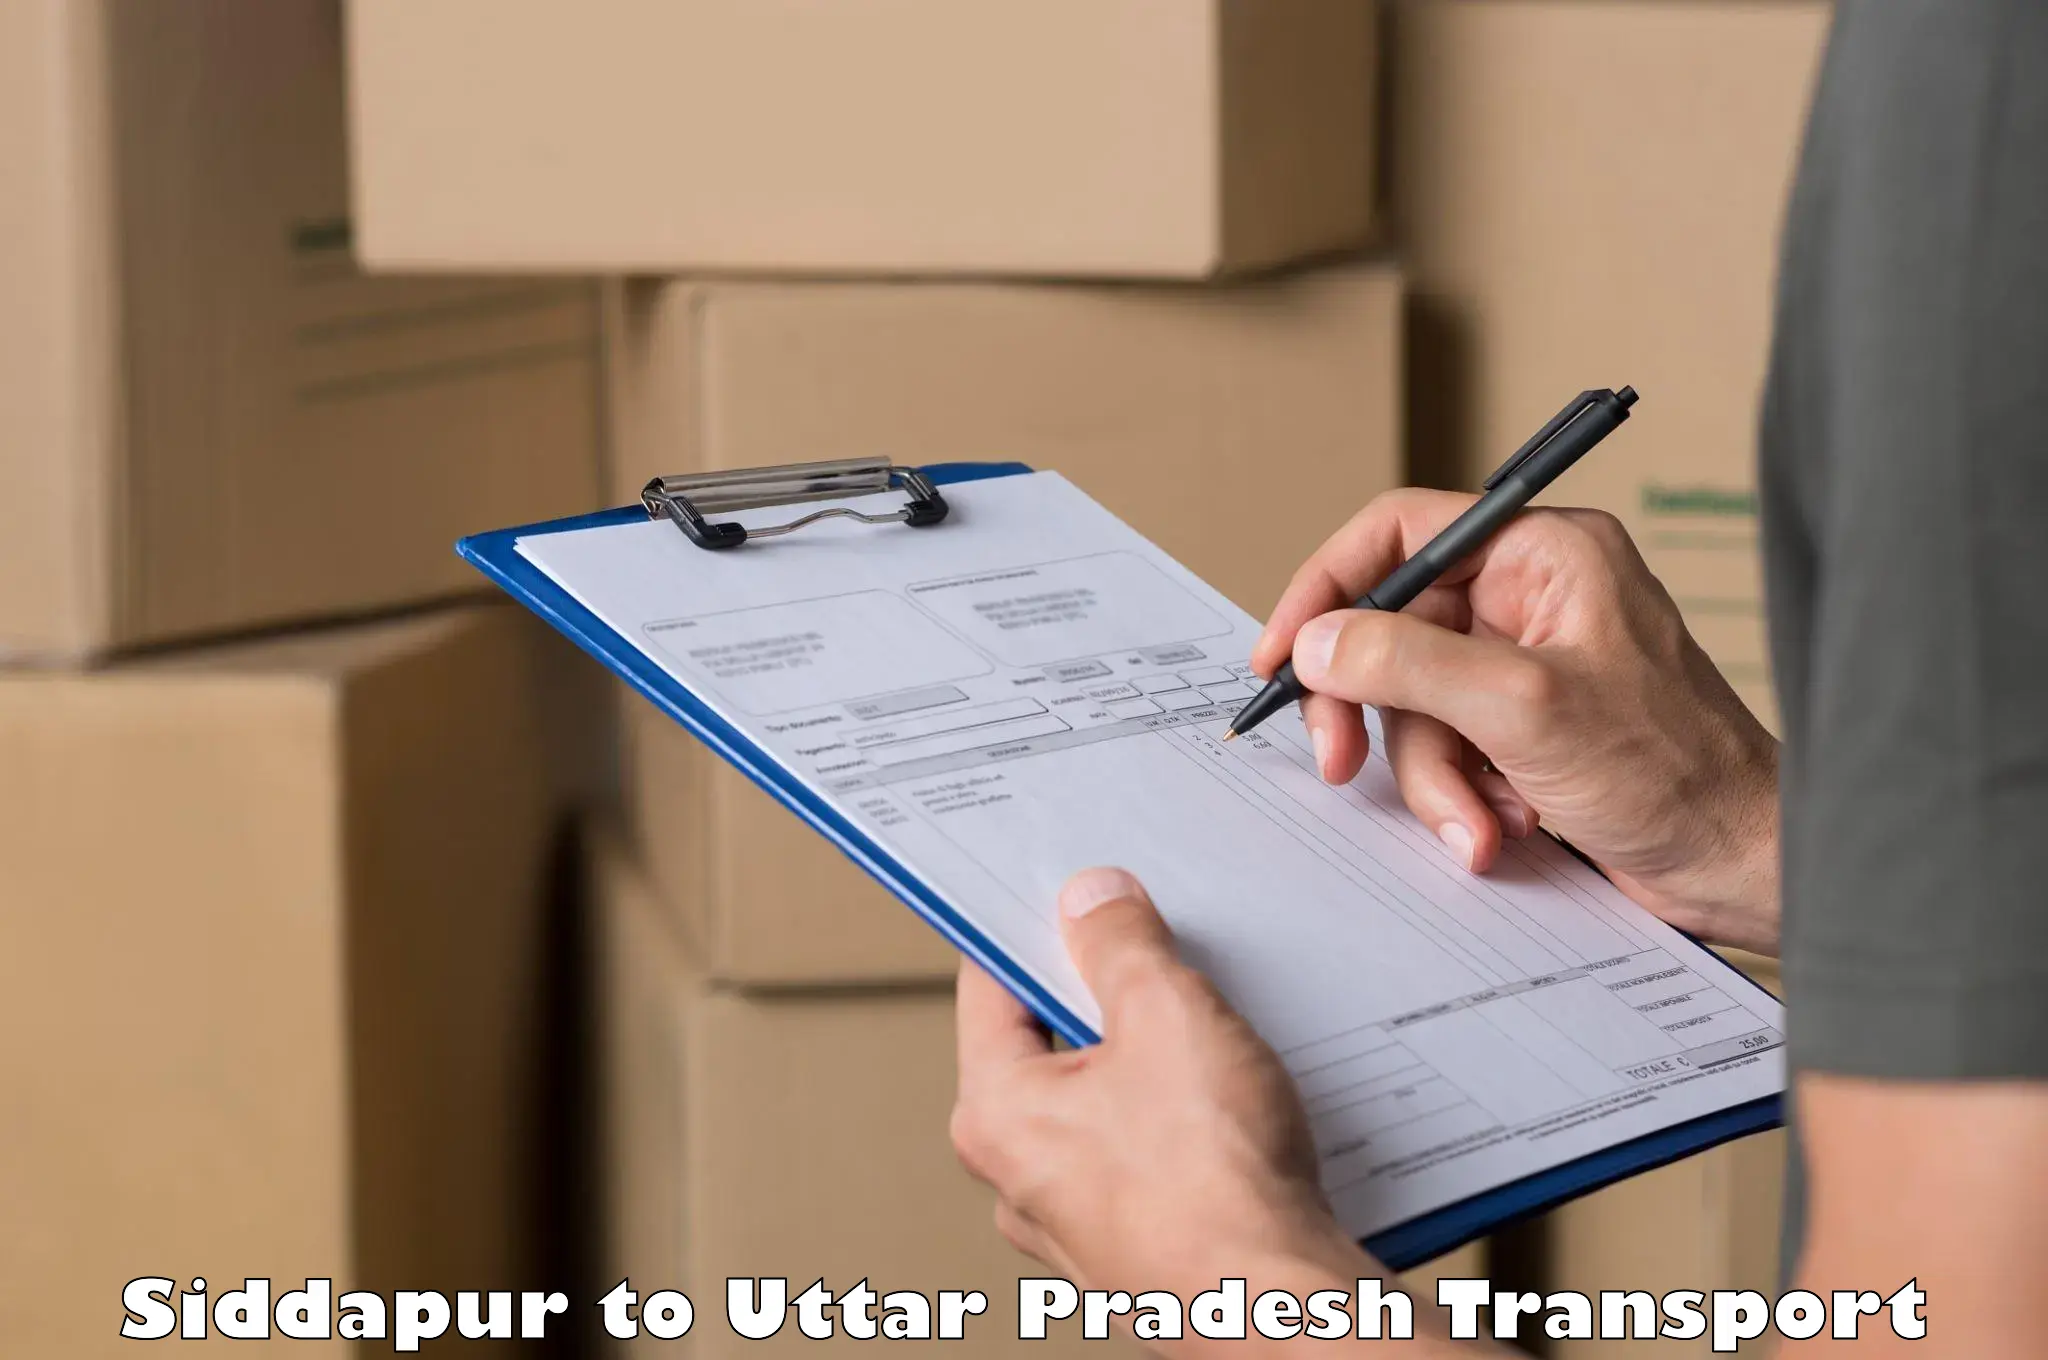 Cargo transportation services Siddapur to IIT Varanasi